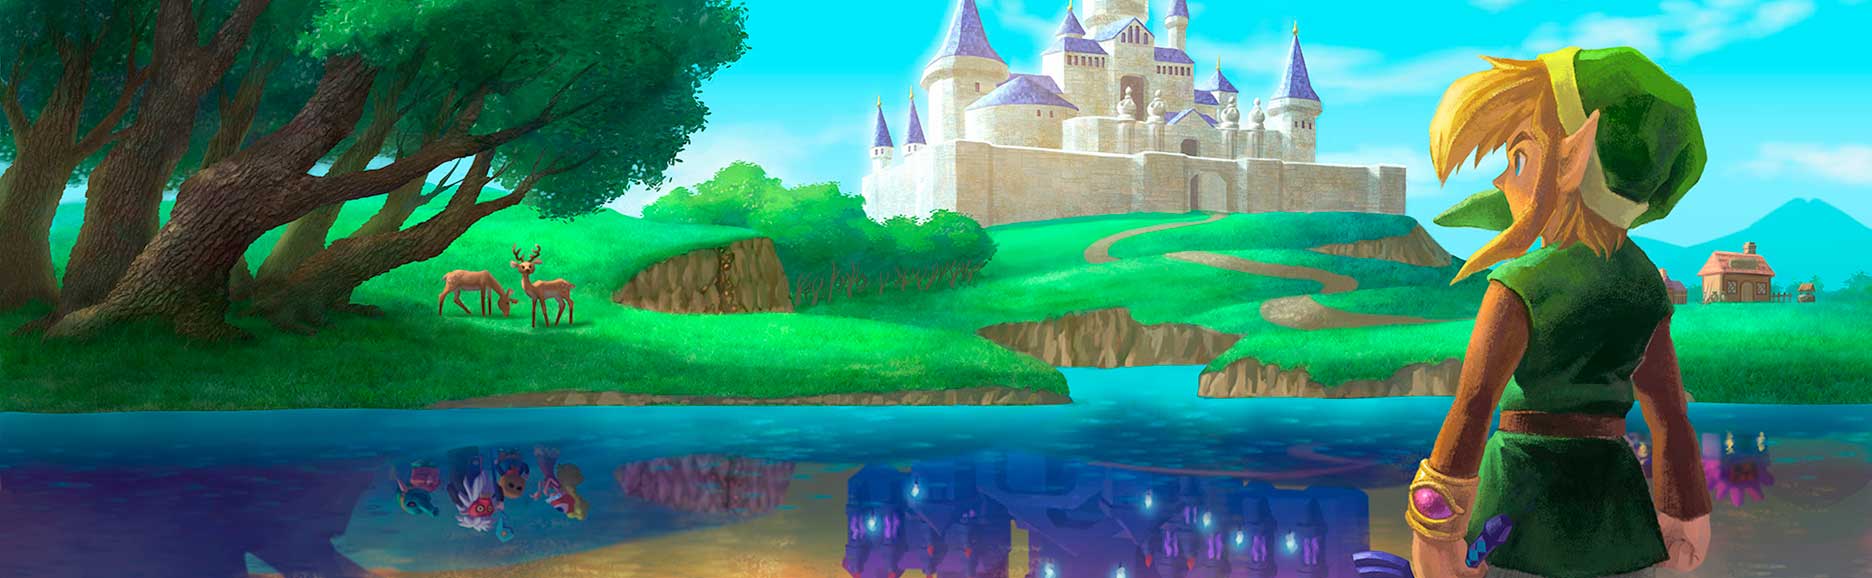 Zelda Link Between Worlds Review